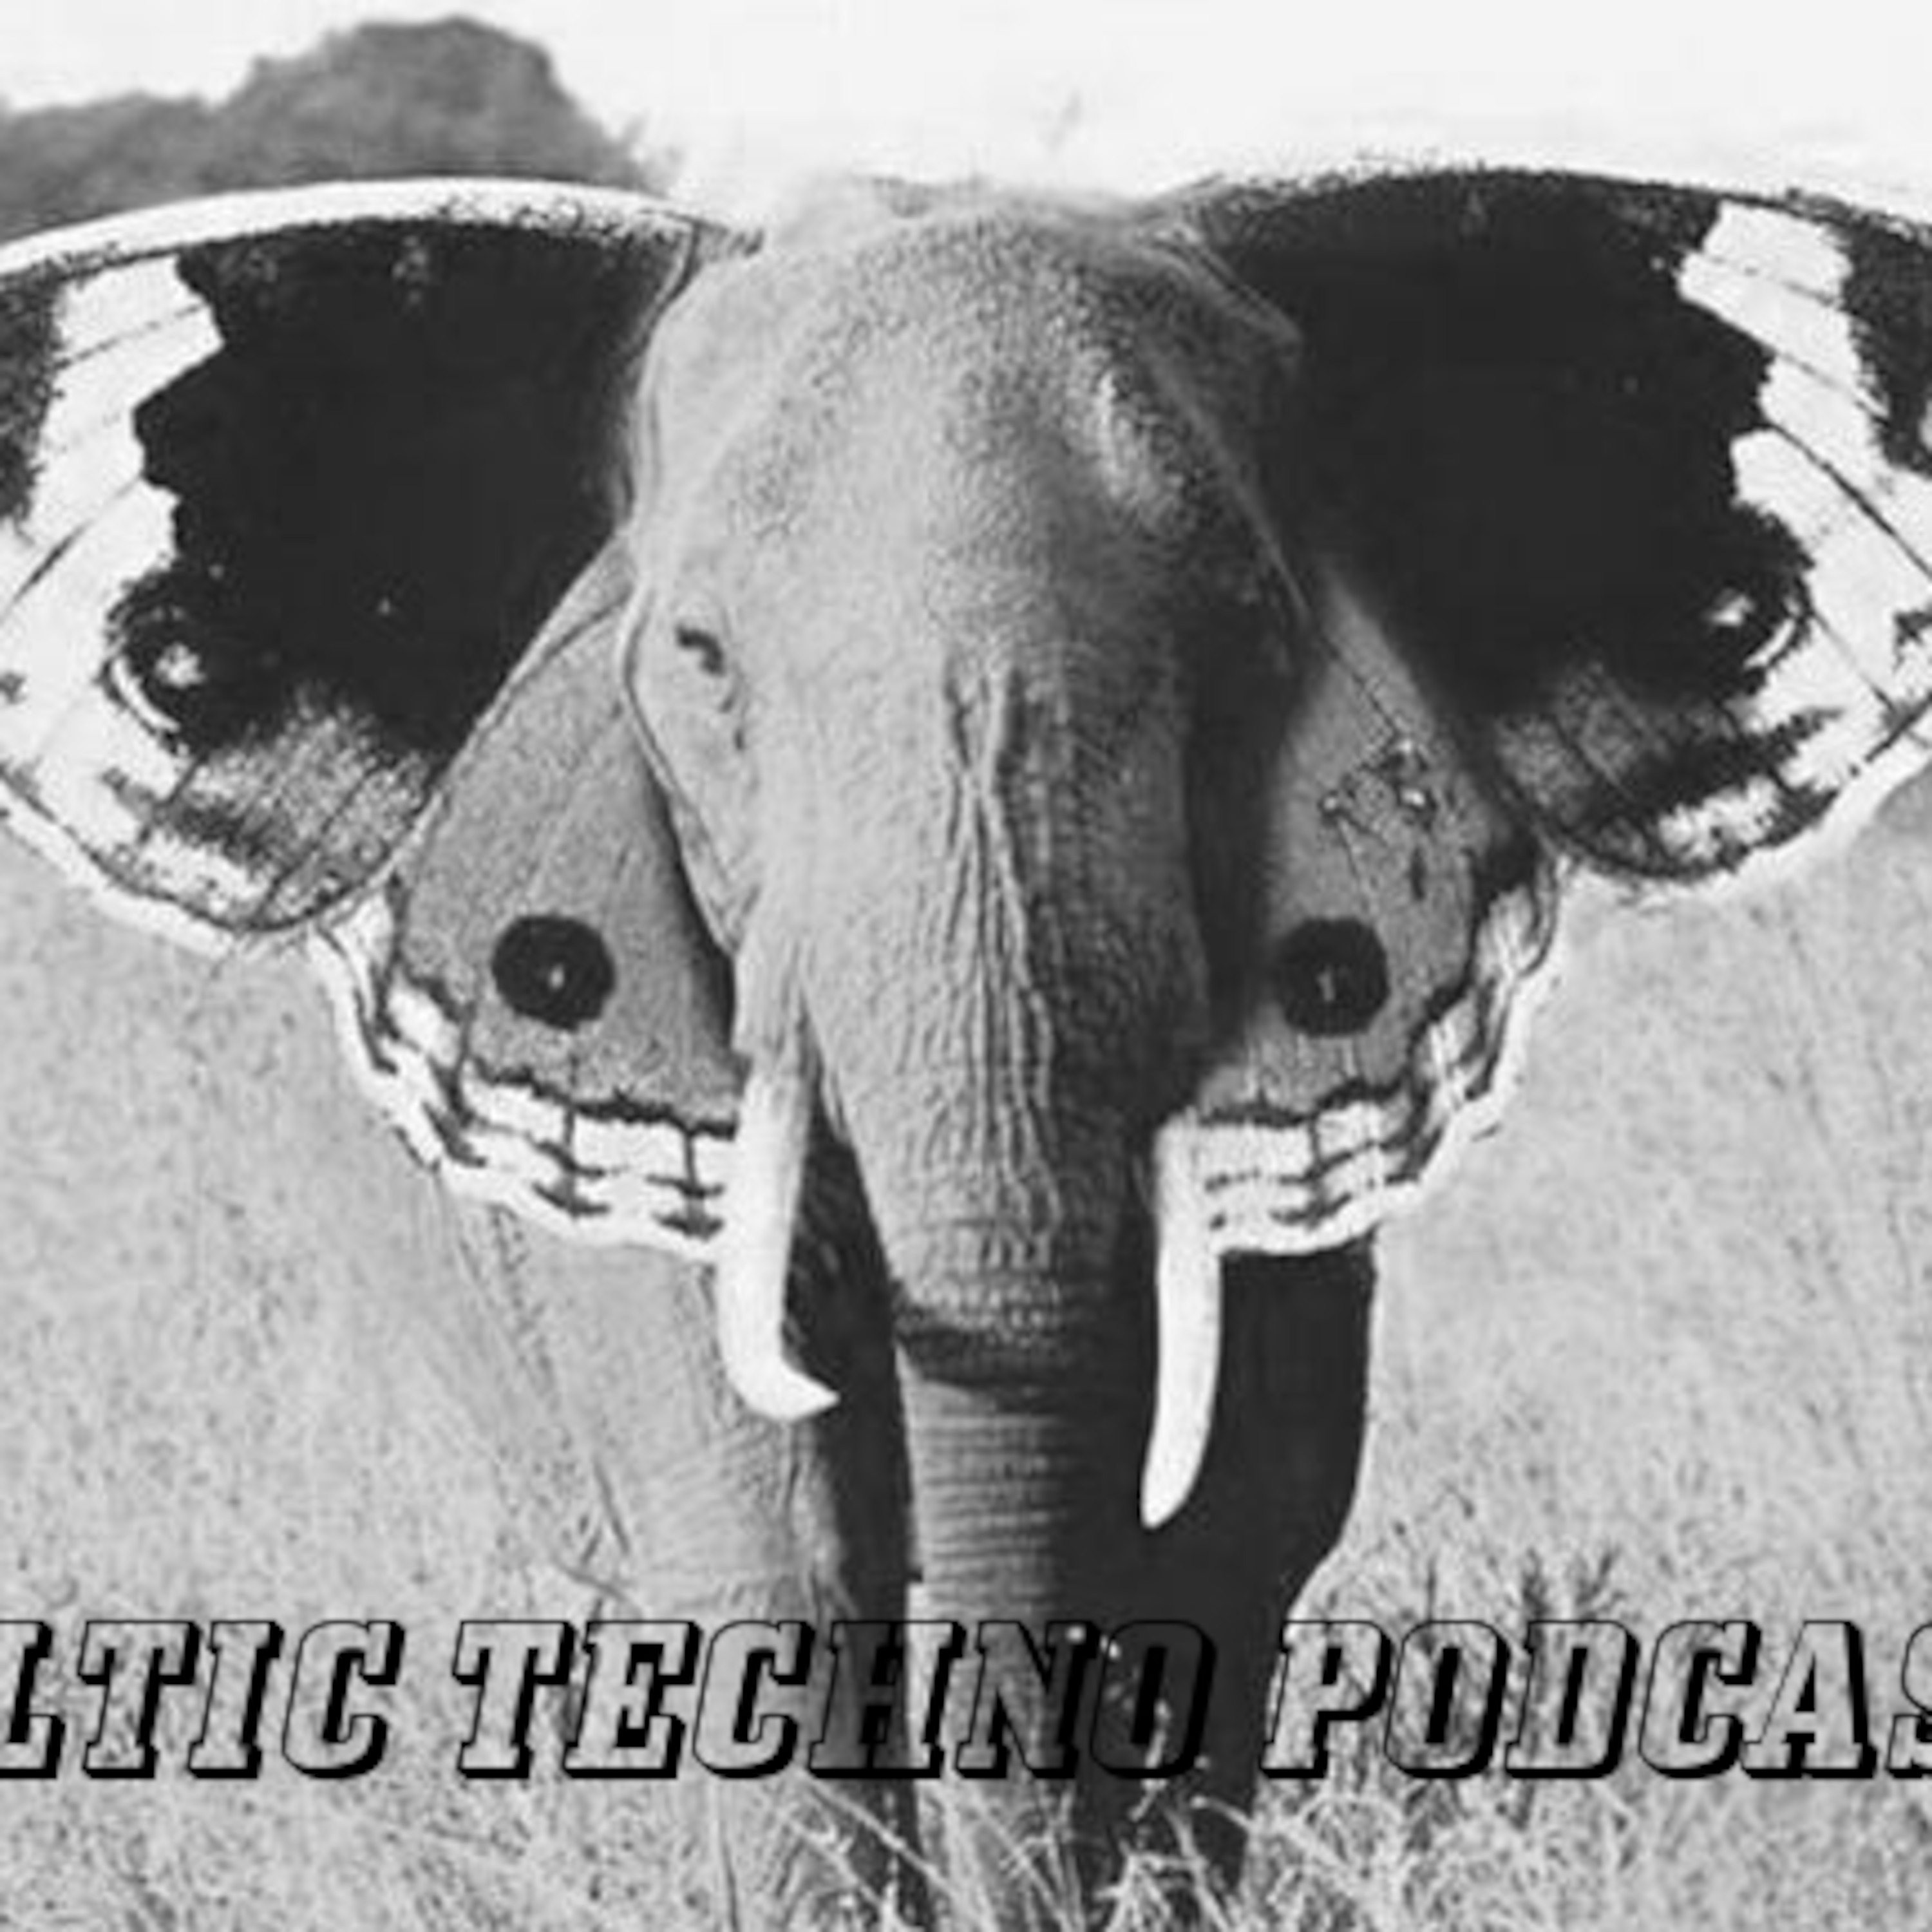 Deltic Techno podcast